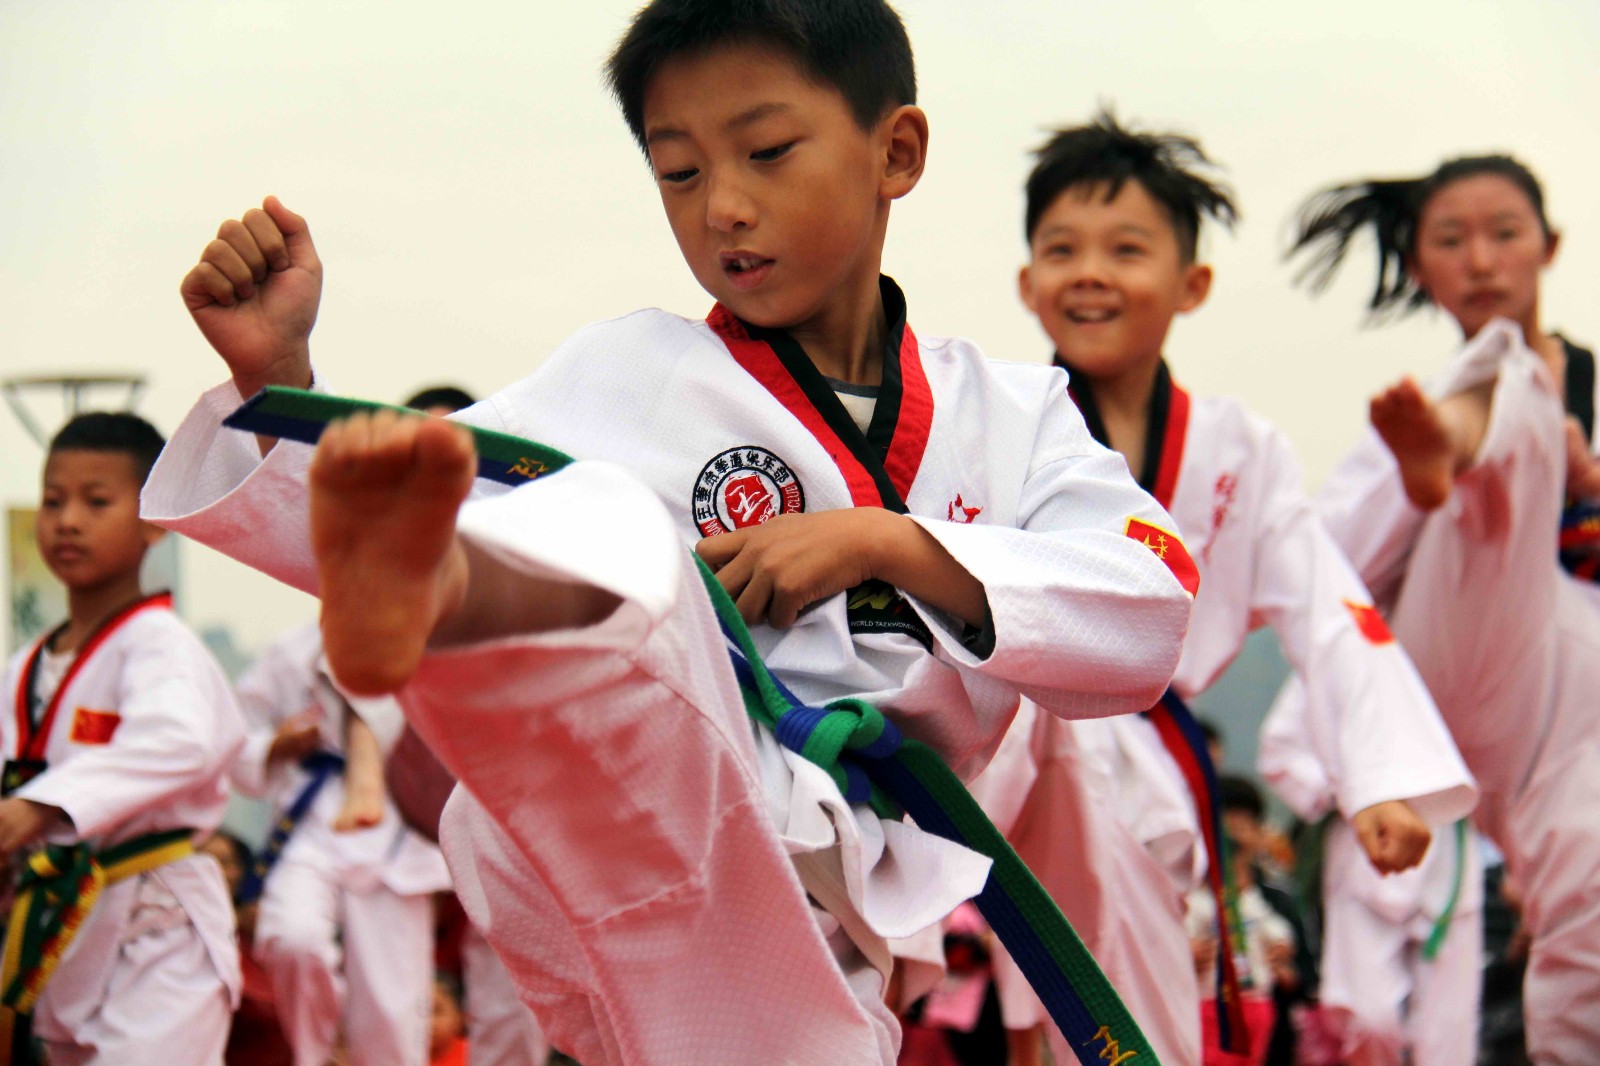 2021年杭州市第二十届市运会青少年部跆拳道赛西湖区选拔赛开幕